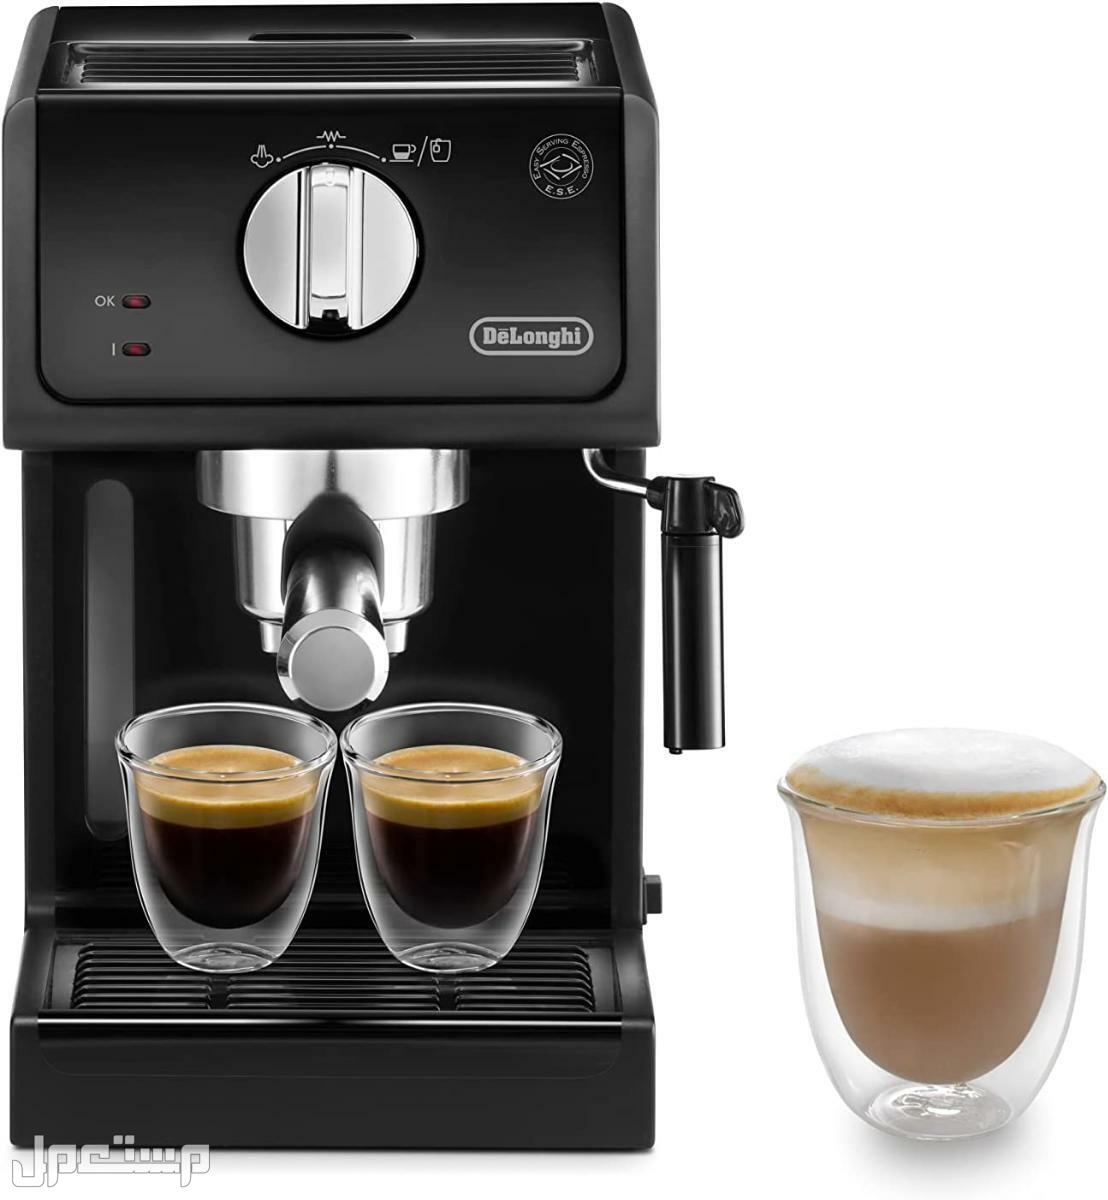 عيوب ومميزات ومواصفات وسعر ماكينة قهوة ديلونجى ديديكا في السعودية لماذا عليك شراء ماكينة قهوة ديلونجي ديديكا ؟